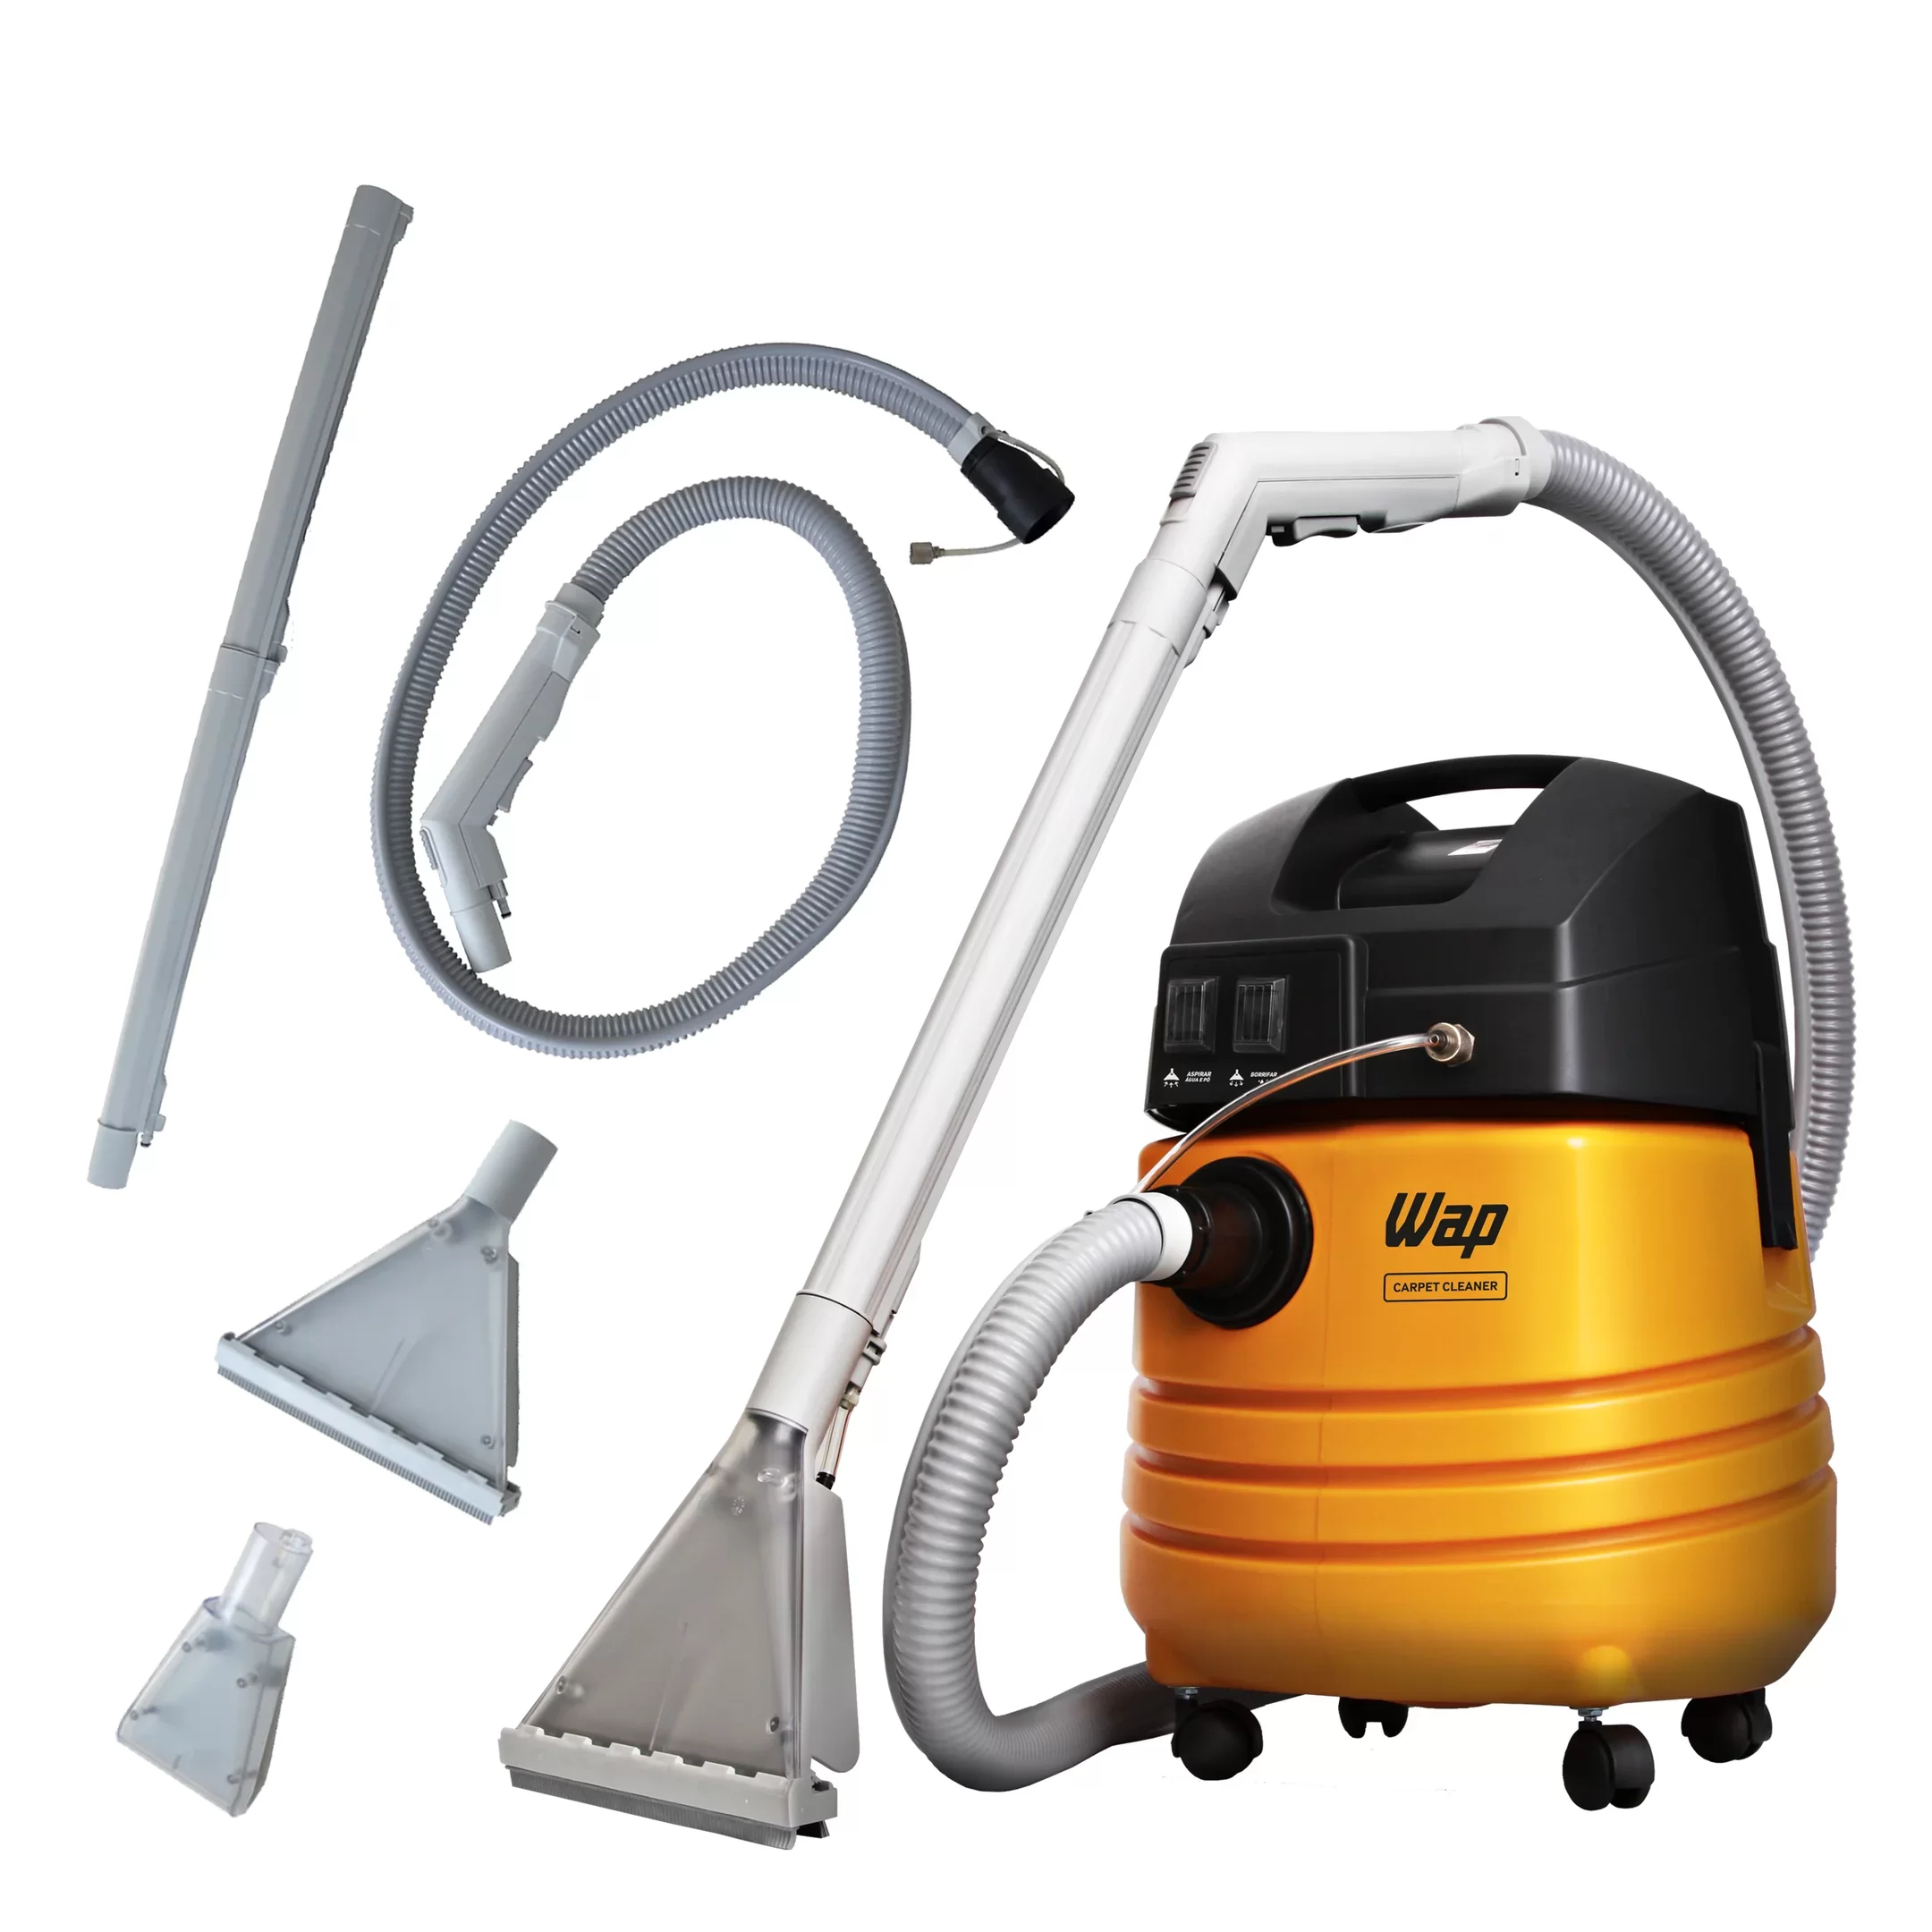 Extratora de Limpeza WAP Carpet Cleaner 1600W Uso Profissional Bocal de Sopro, Borrifa e Aspira 127V Amarelo/Preto - 3